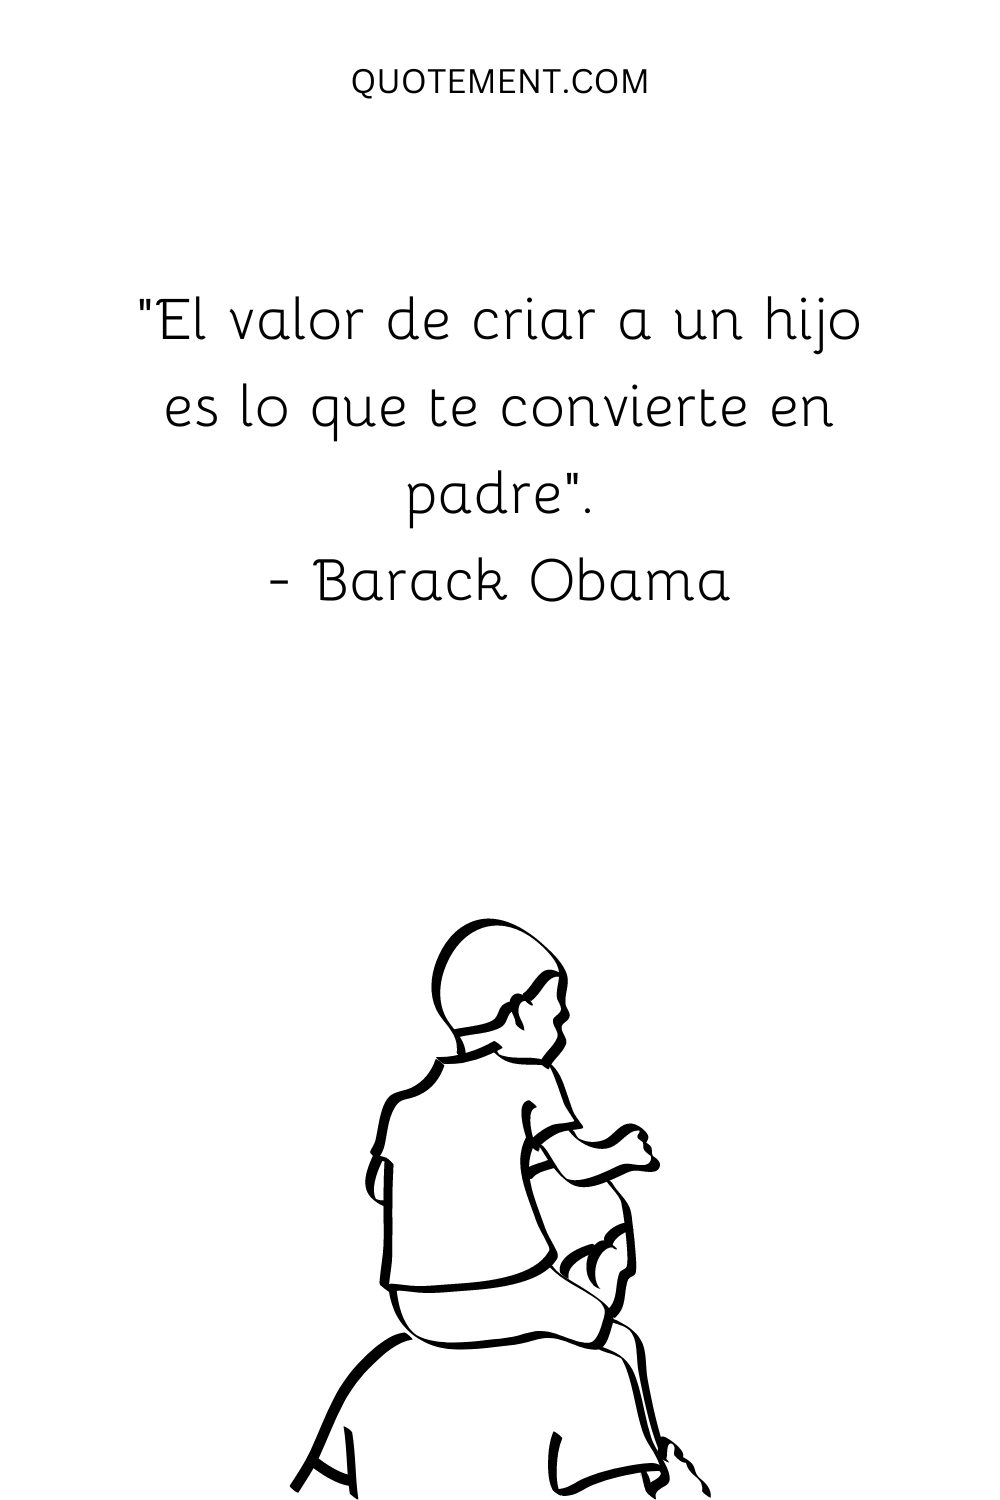 "El valor de criar a un hijo es lo que te convierte en padre". - Barack Obama